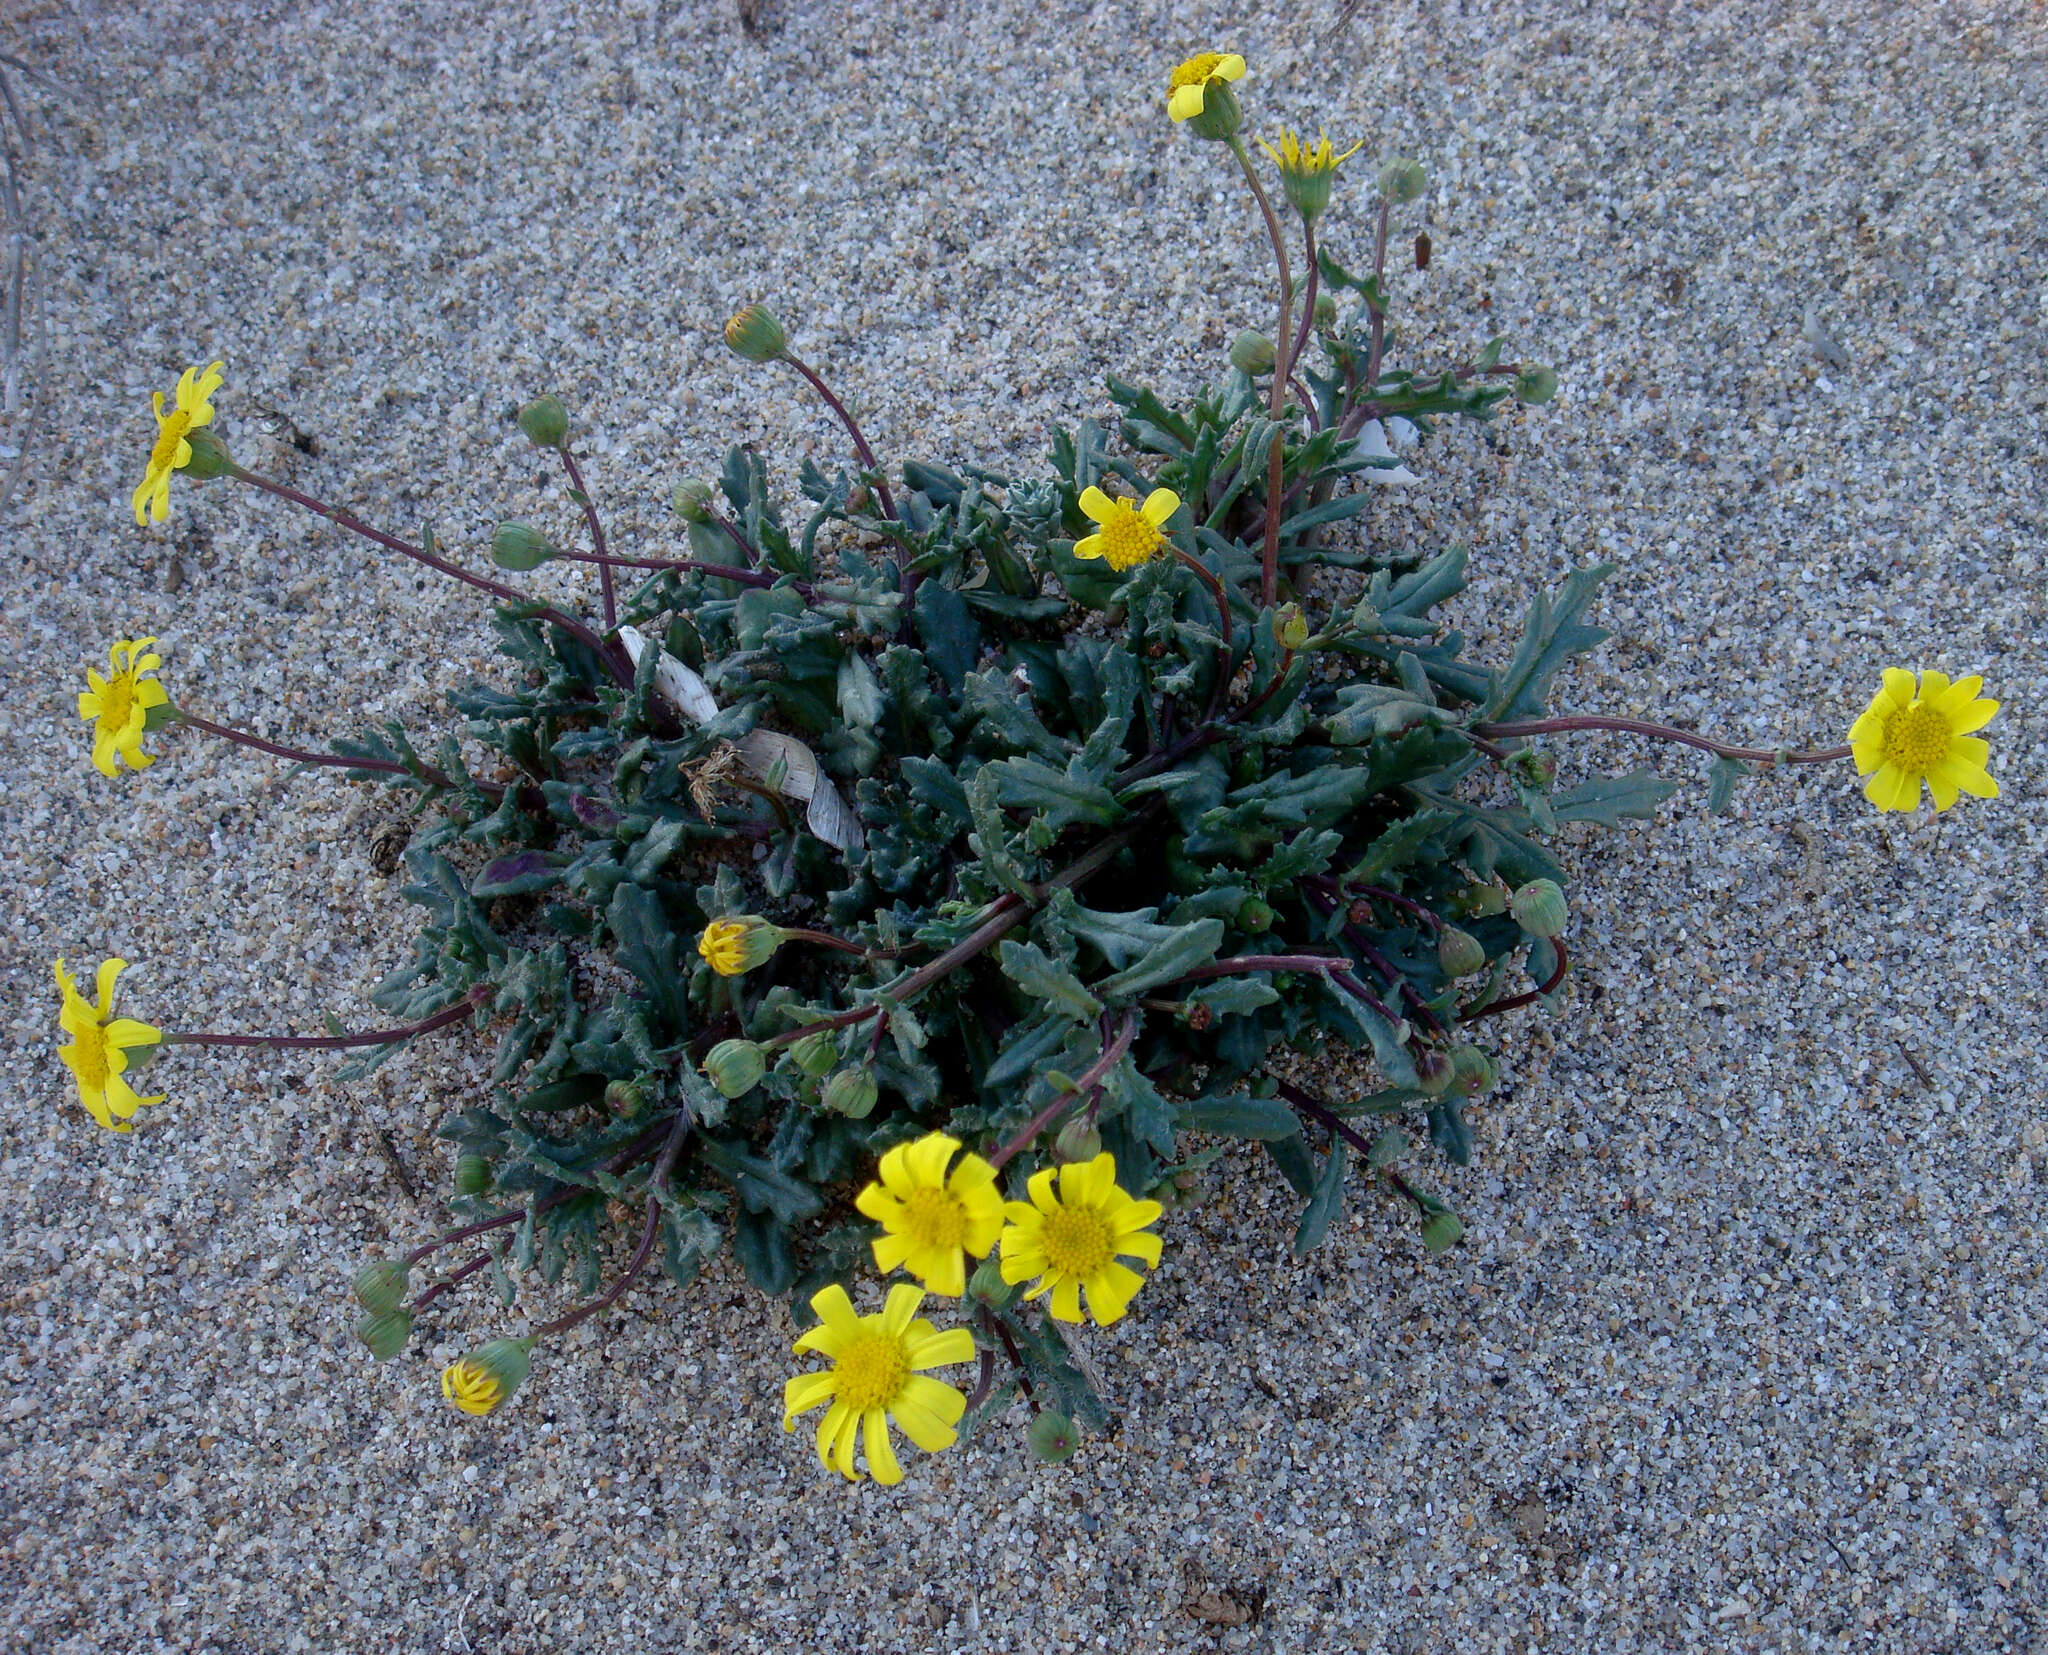 Image of coastal ragwort